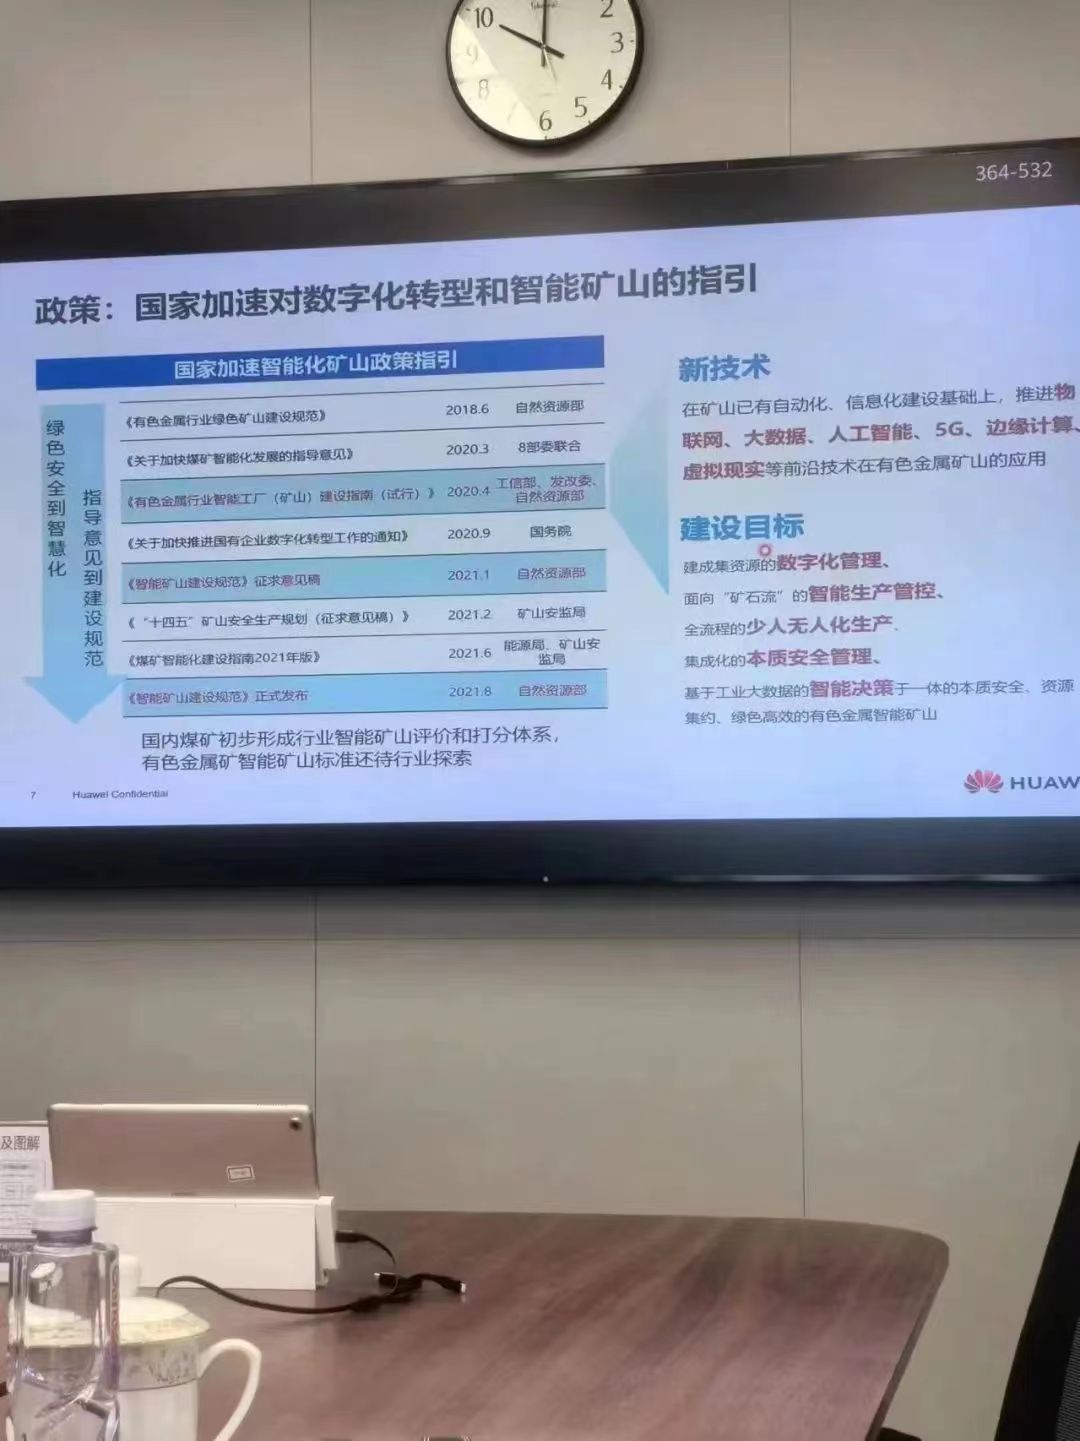 木星控股集团副总经理武春涛与华为安徽代表处进行工作座谈(图4)